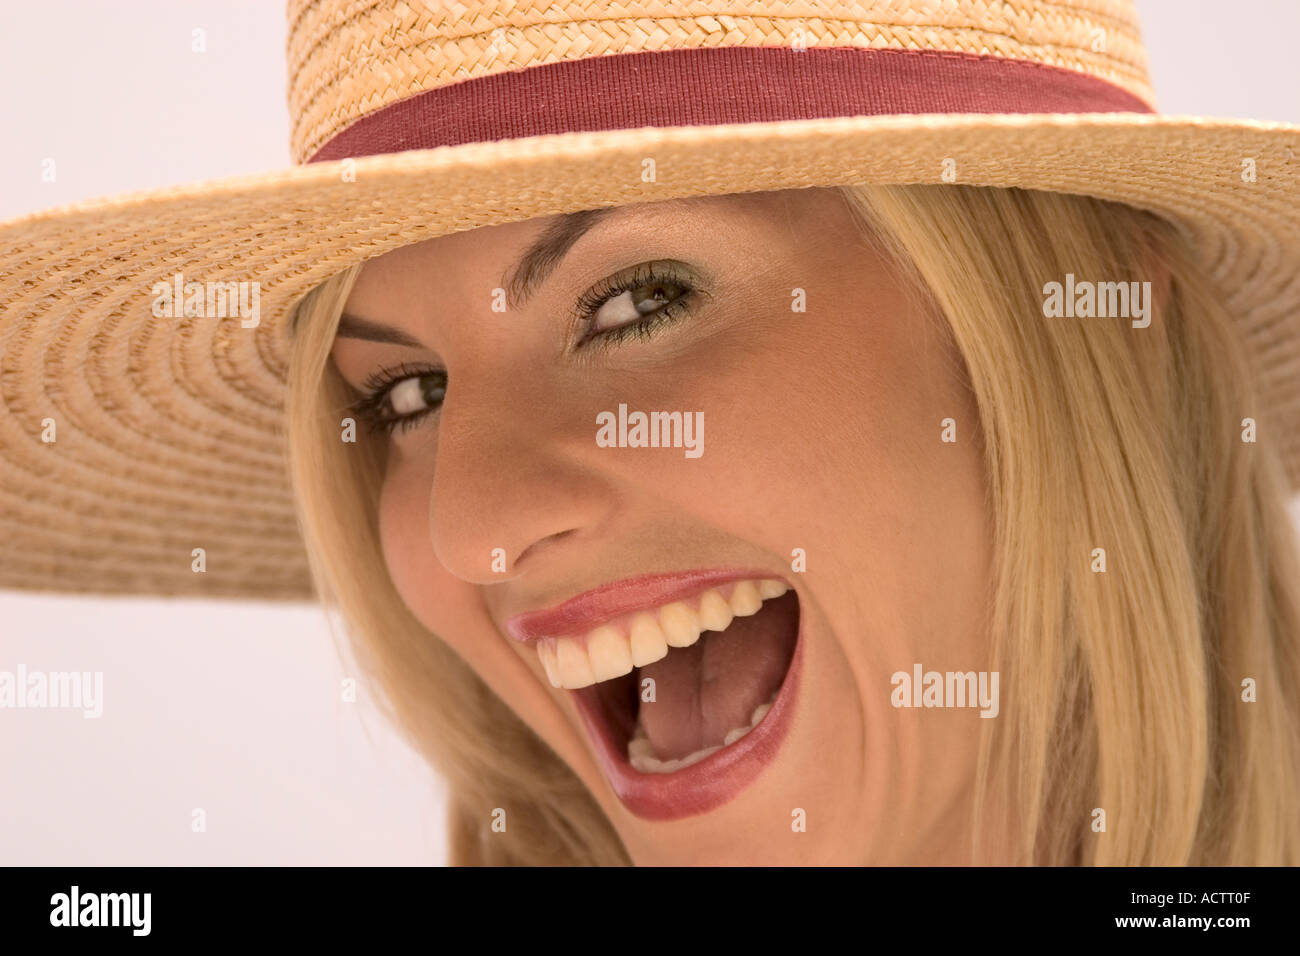 Mujer rubia con sombrero de paja coquettes Foto de stock